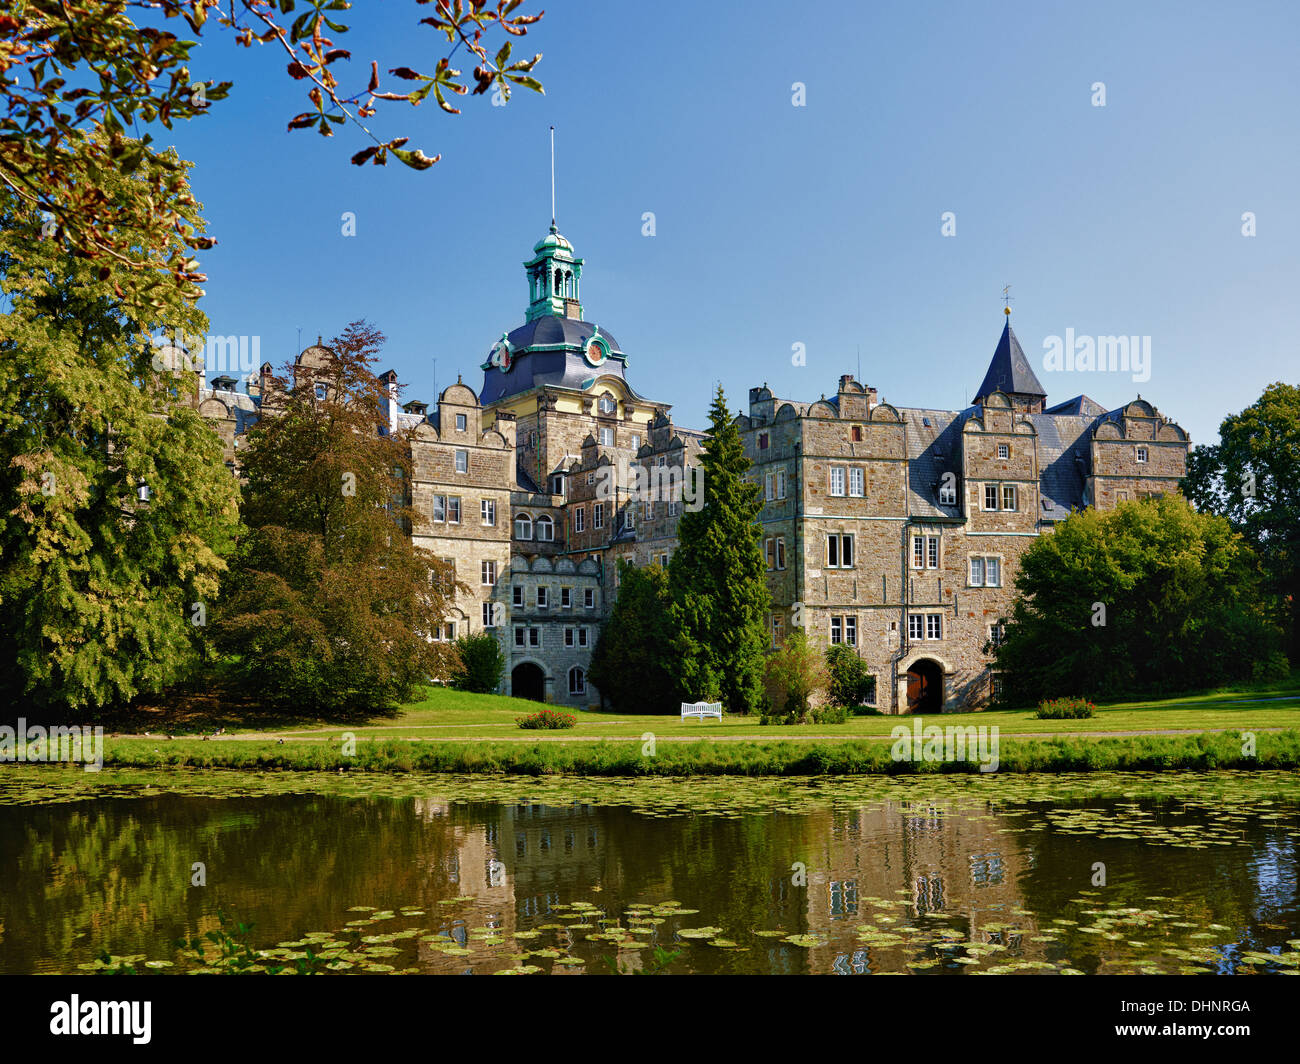 Bueckeburg Palace, Bückeburg, Lower Saxony, Germany Stock Photo